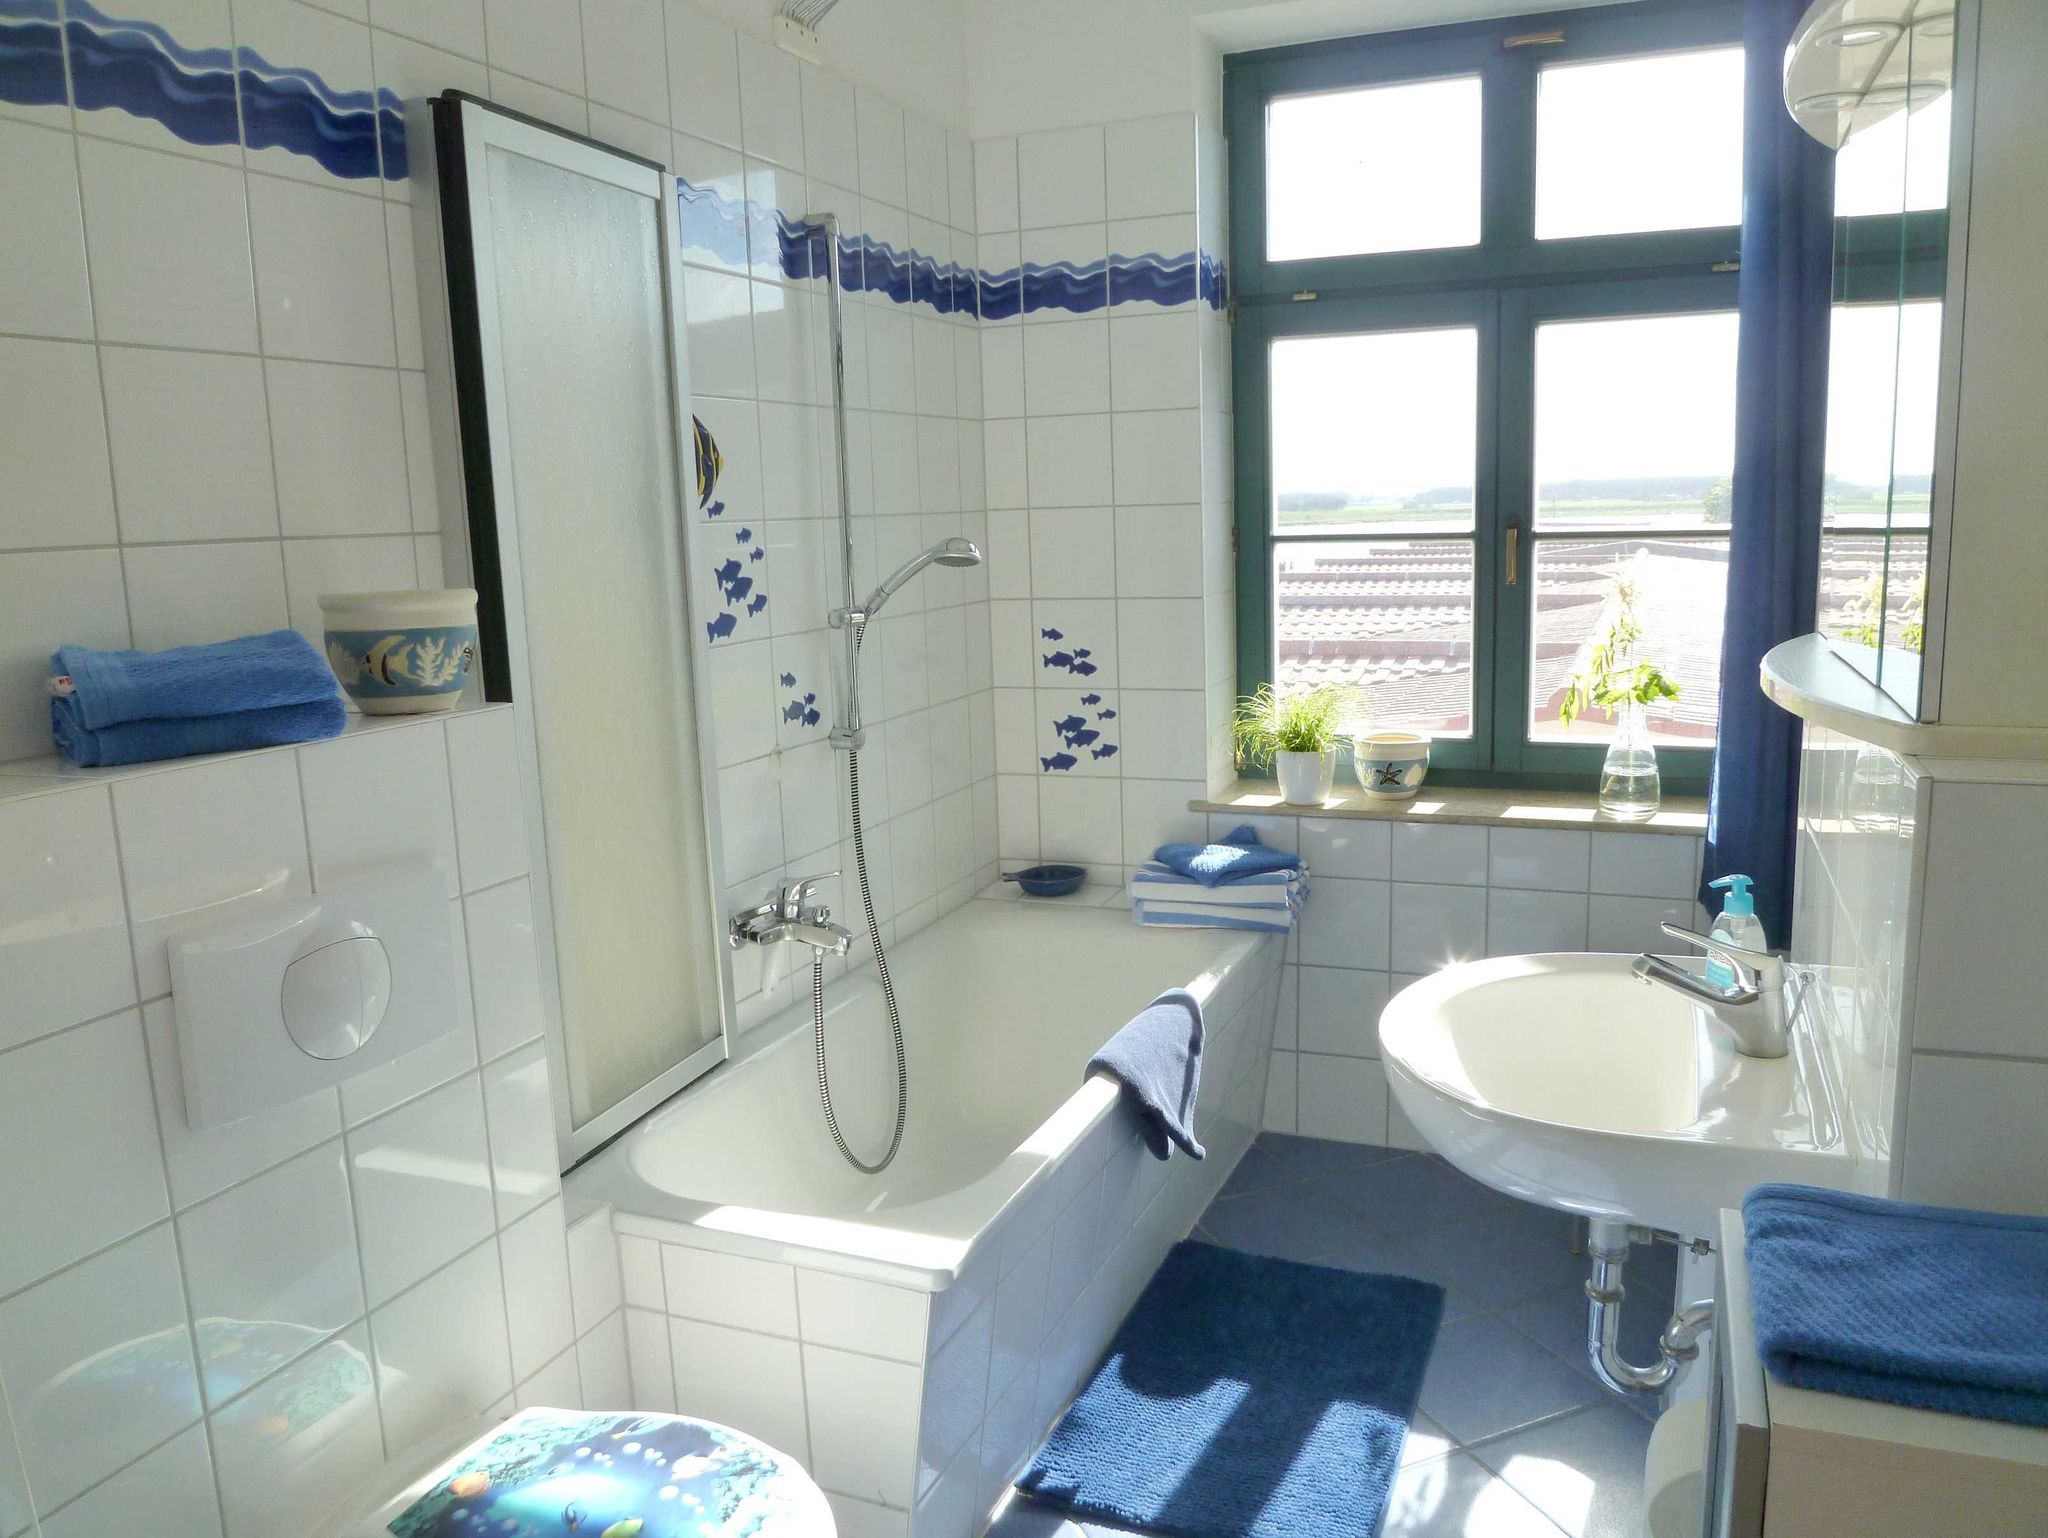 Helles Bad in maritimem Design mit Badewanne und Duschvorrichtung